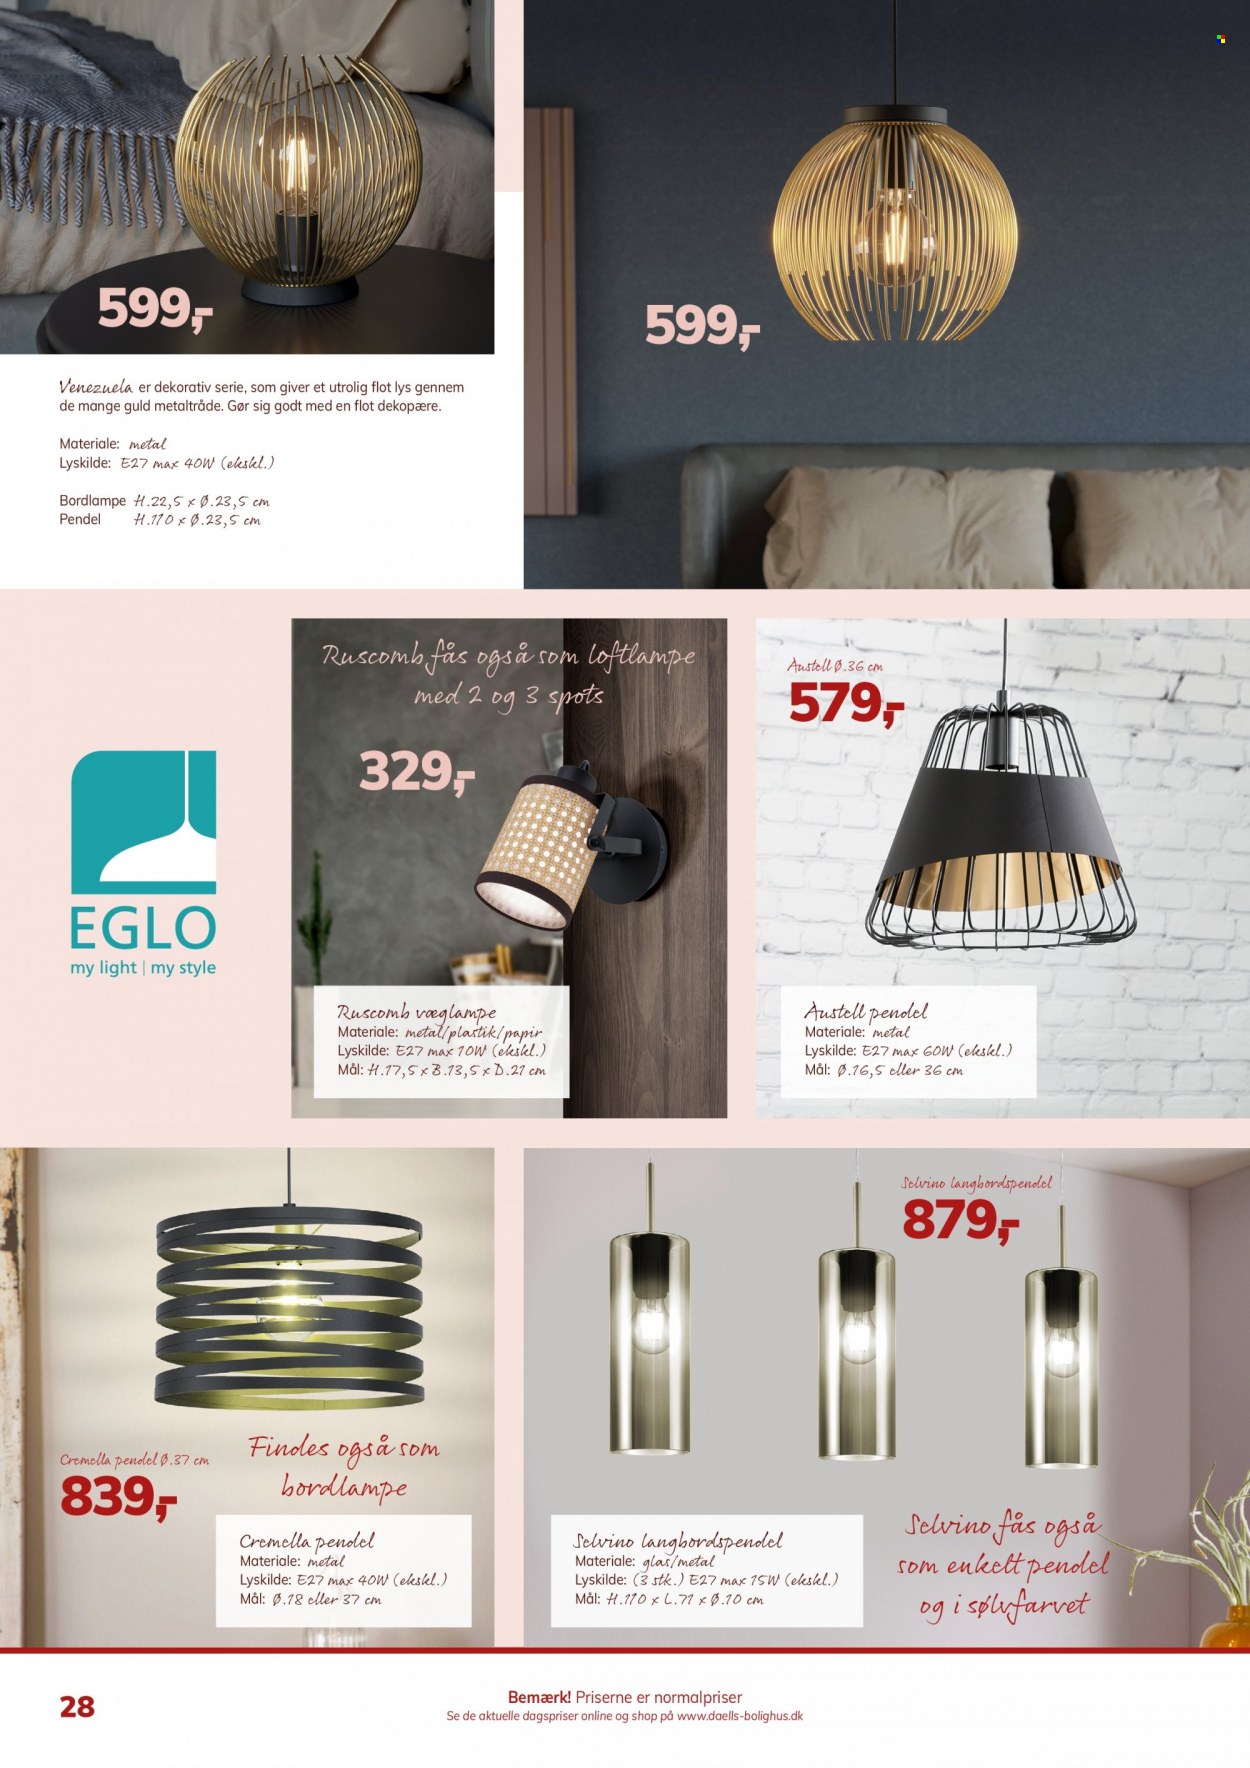 thumbnail - Daells Bolighus tilbud  - tilbudsprodukter - pendel, bordlampe, loftlampe. Side 28.